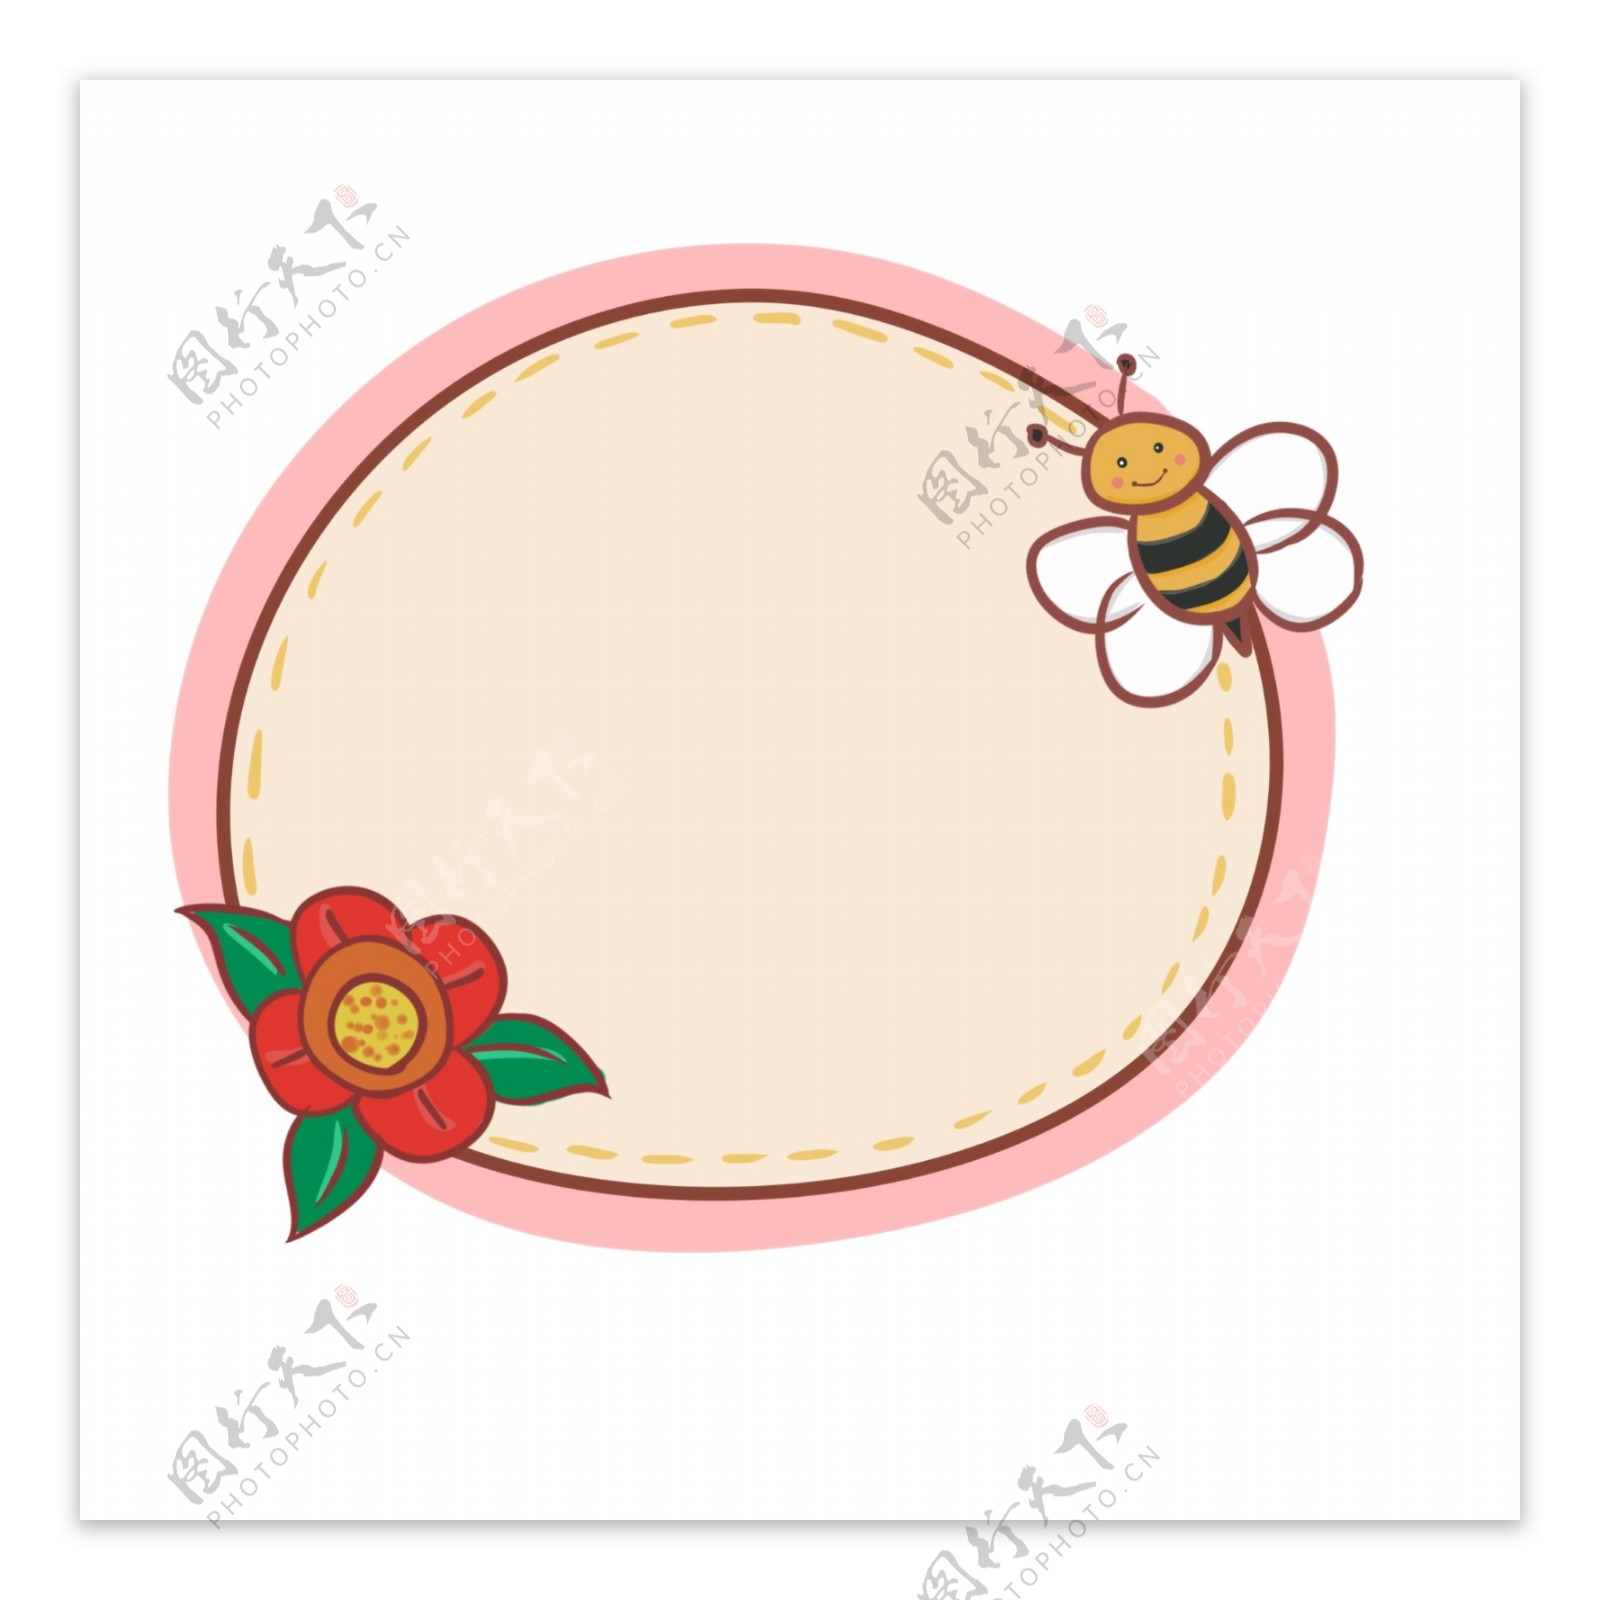 卡通花朵蜜蜂边框插画